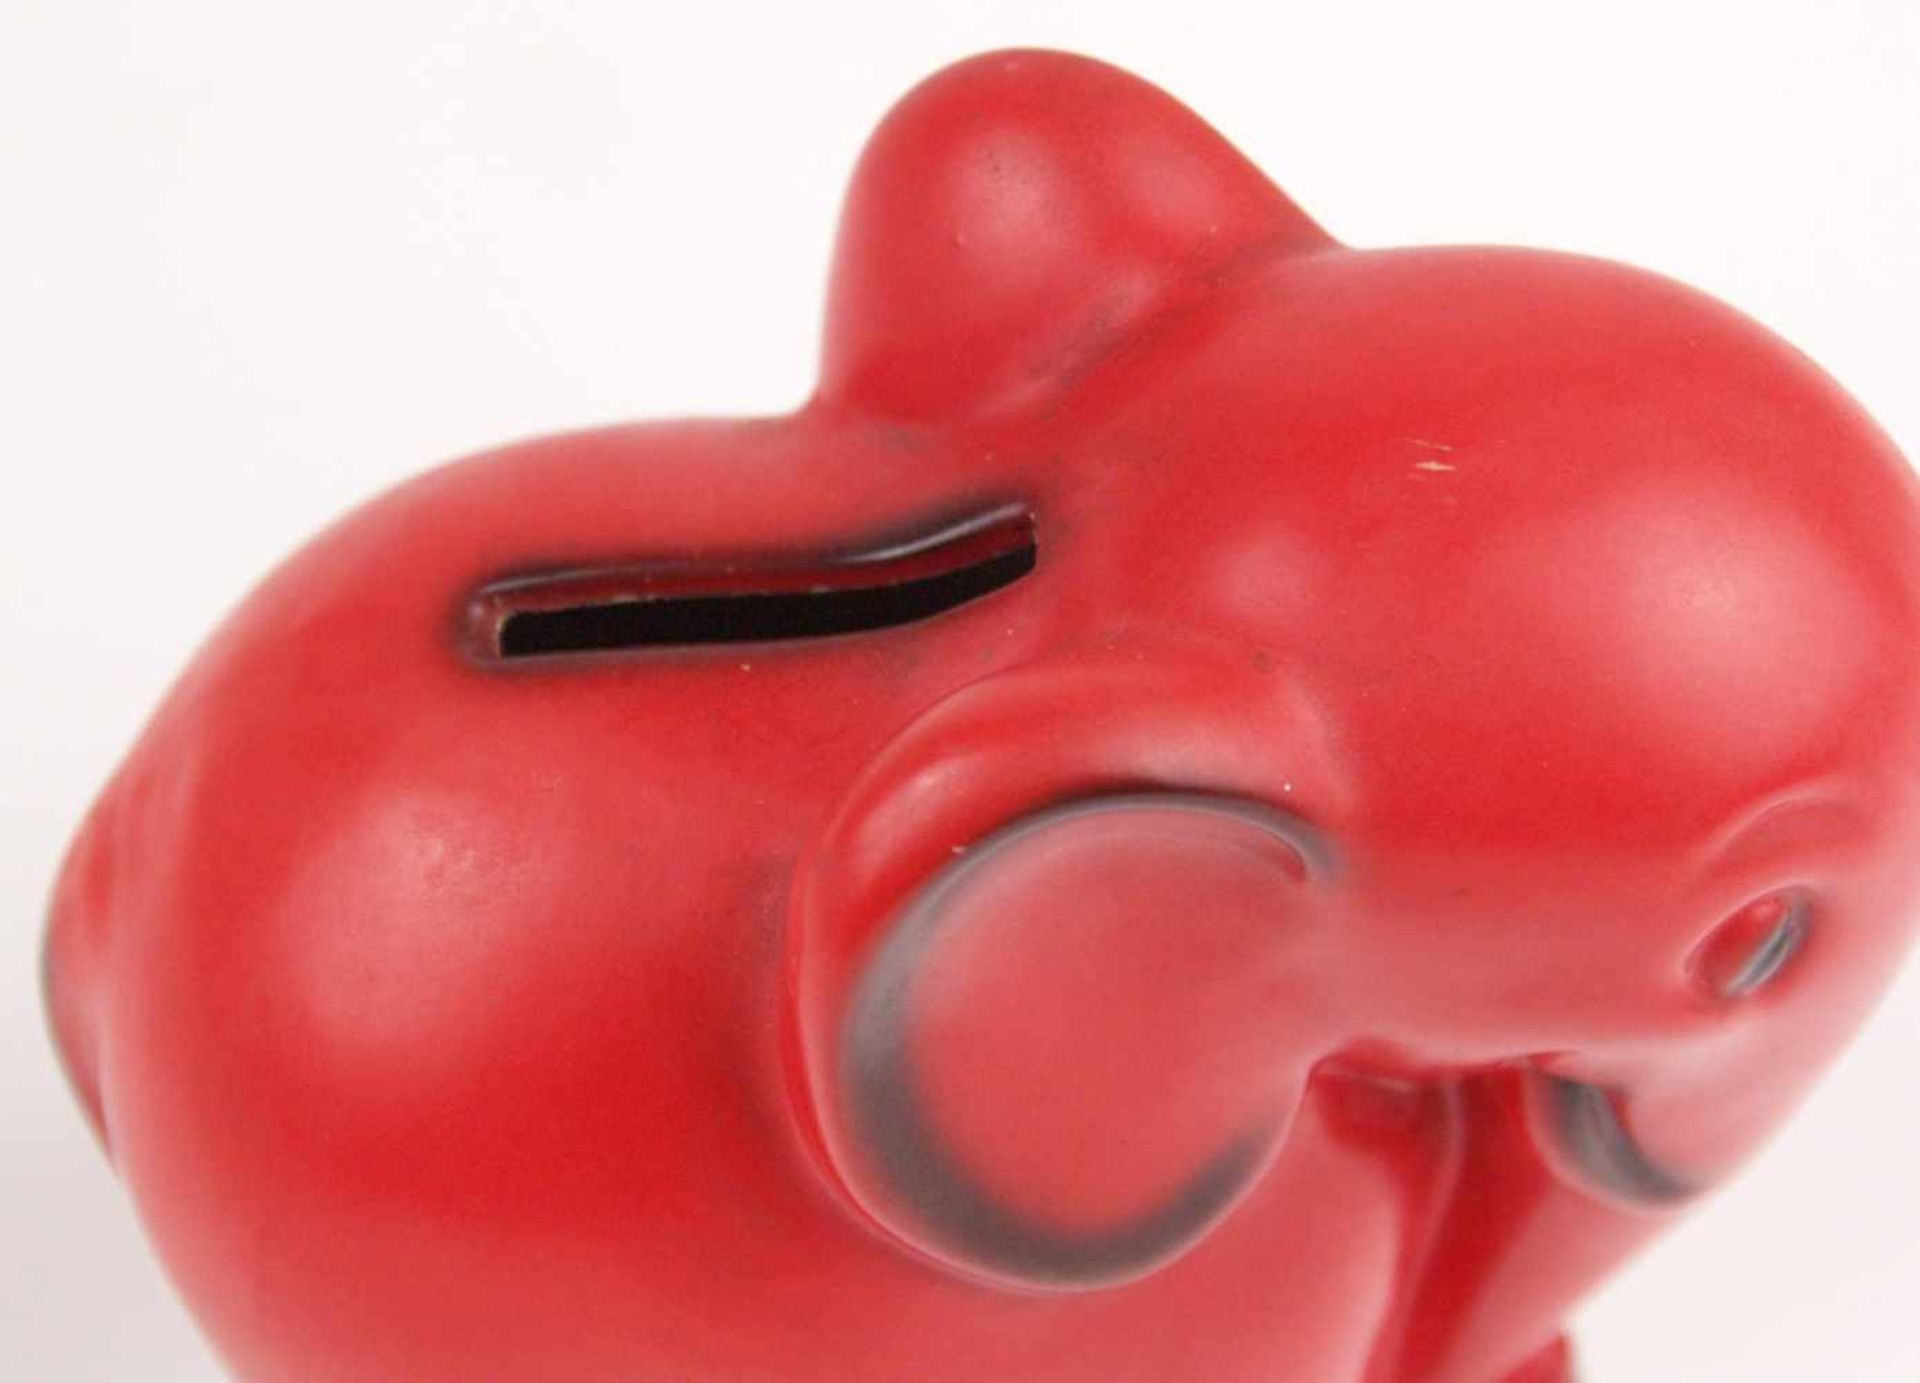 Spardose Elefant Goebel - Spardose in Form eines Elefanten, rot/schwarz bemalt, Schlitz für Münzen - Bild 3 aus 5